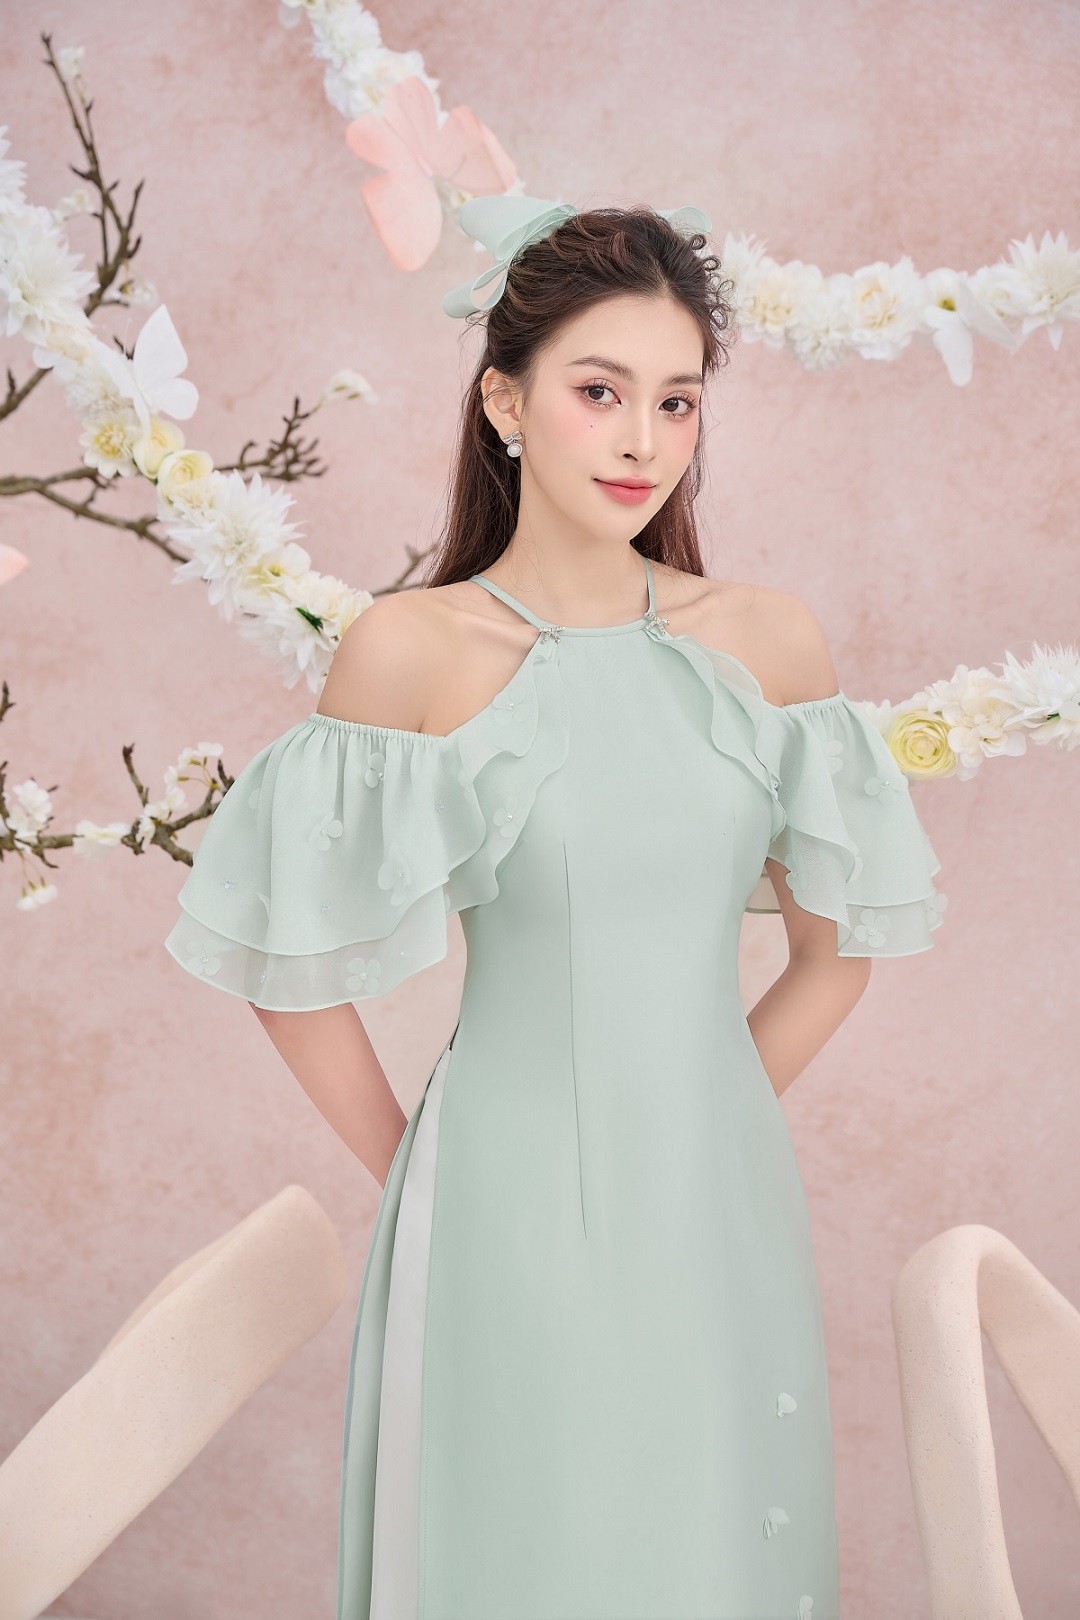 Hoa hậu Tiểu Vy phong cách tiểu thư ngọt ngào trong bộ ảnh áo dài cách tân dịp Tết